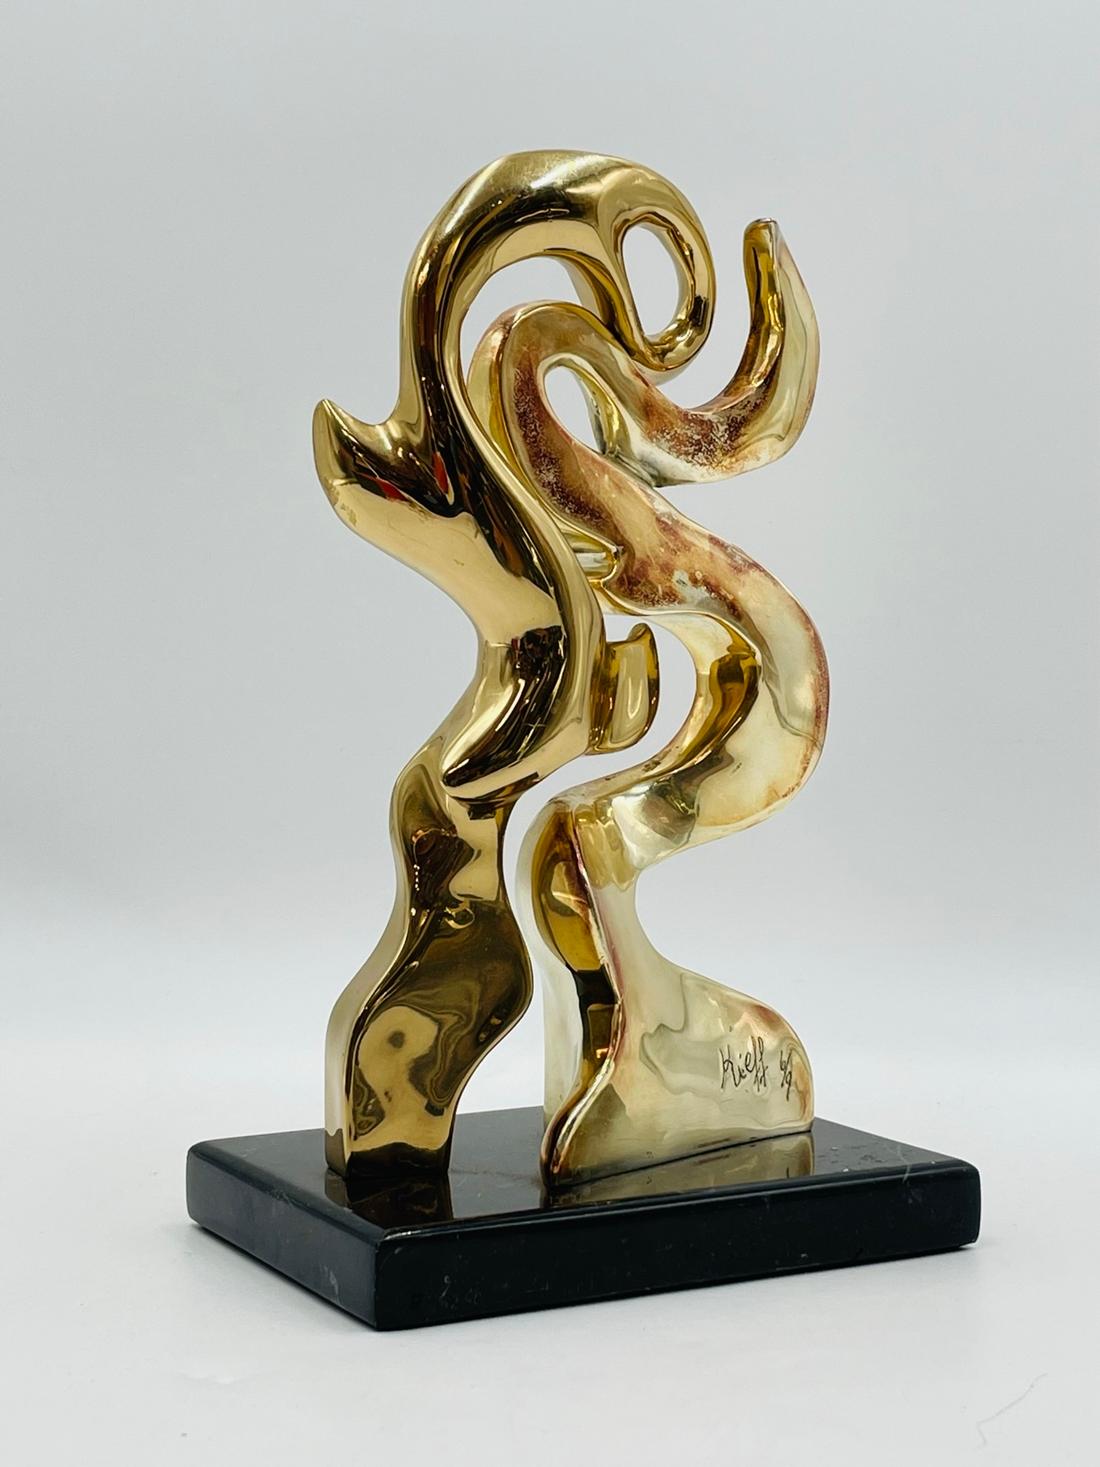 La sculpture en bronze de Kieff Grediaga est une œuvre d'art étonnante qui rehaussera la décoration de votre maison ou de votre bureau. Cette sculpture exquise présente deux lignes connectées qui s'entrelacent magnifiquement, créant un sentiment de